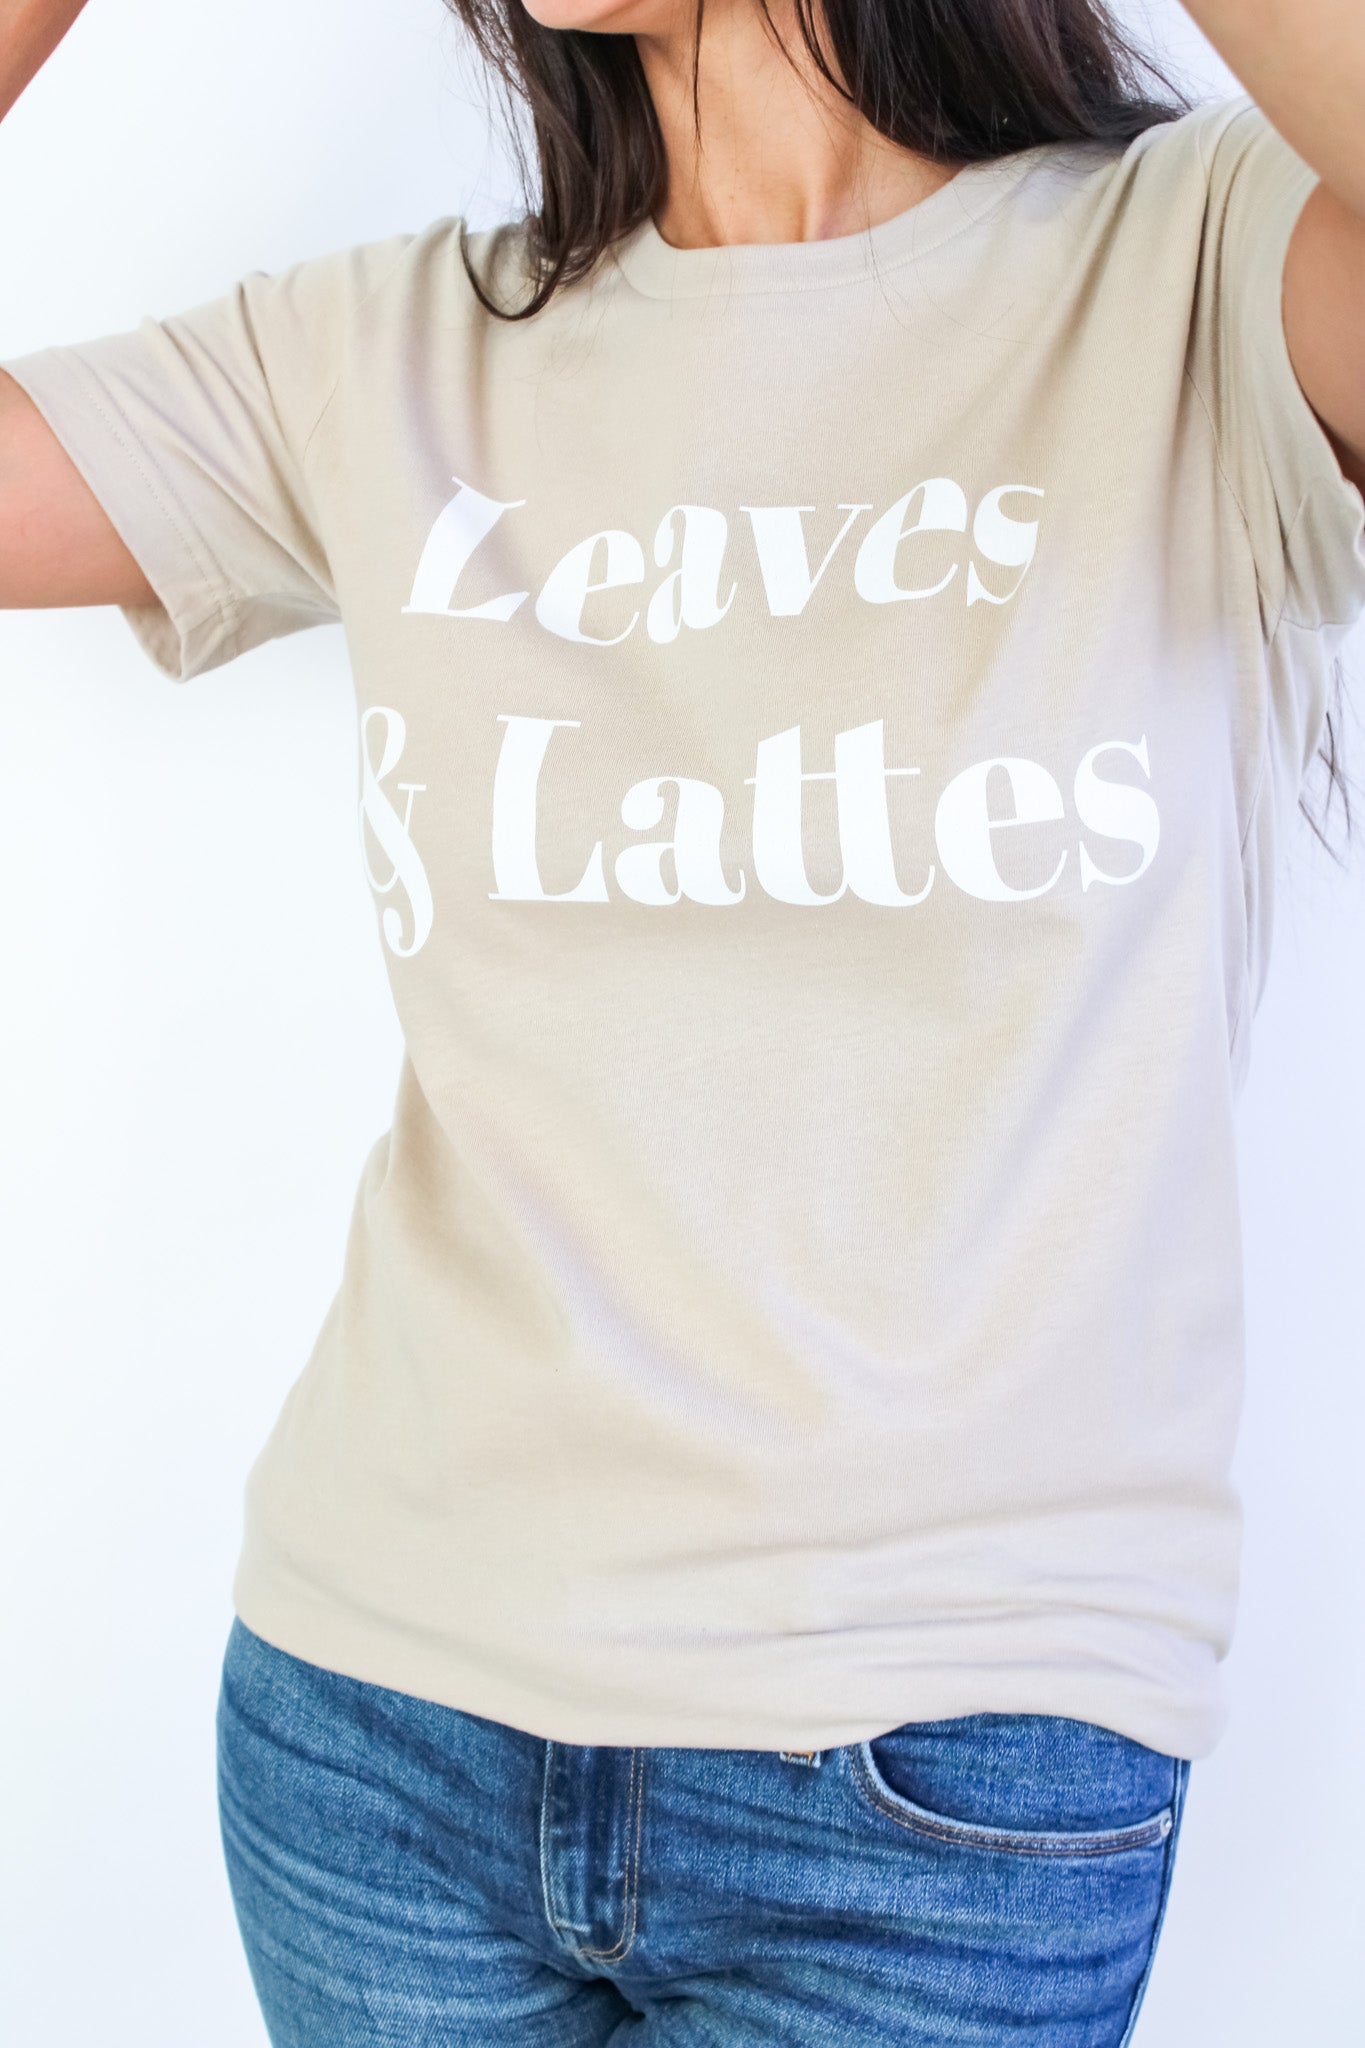 Leaves & Lattes Tee